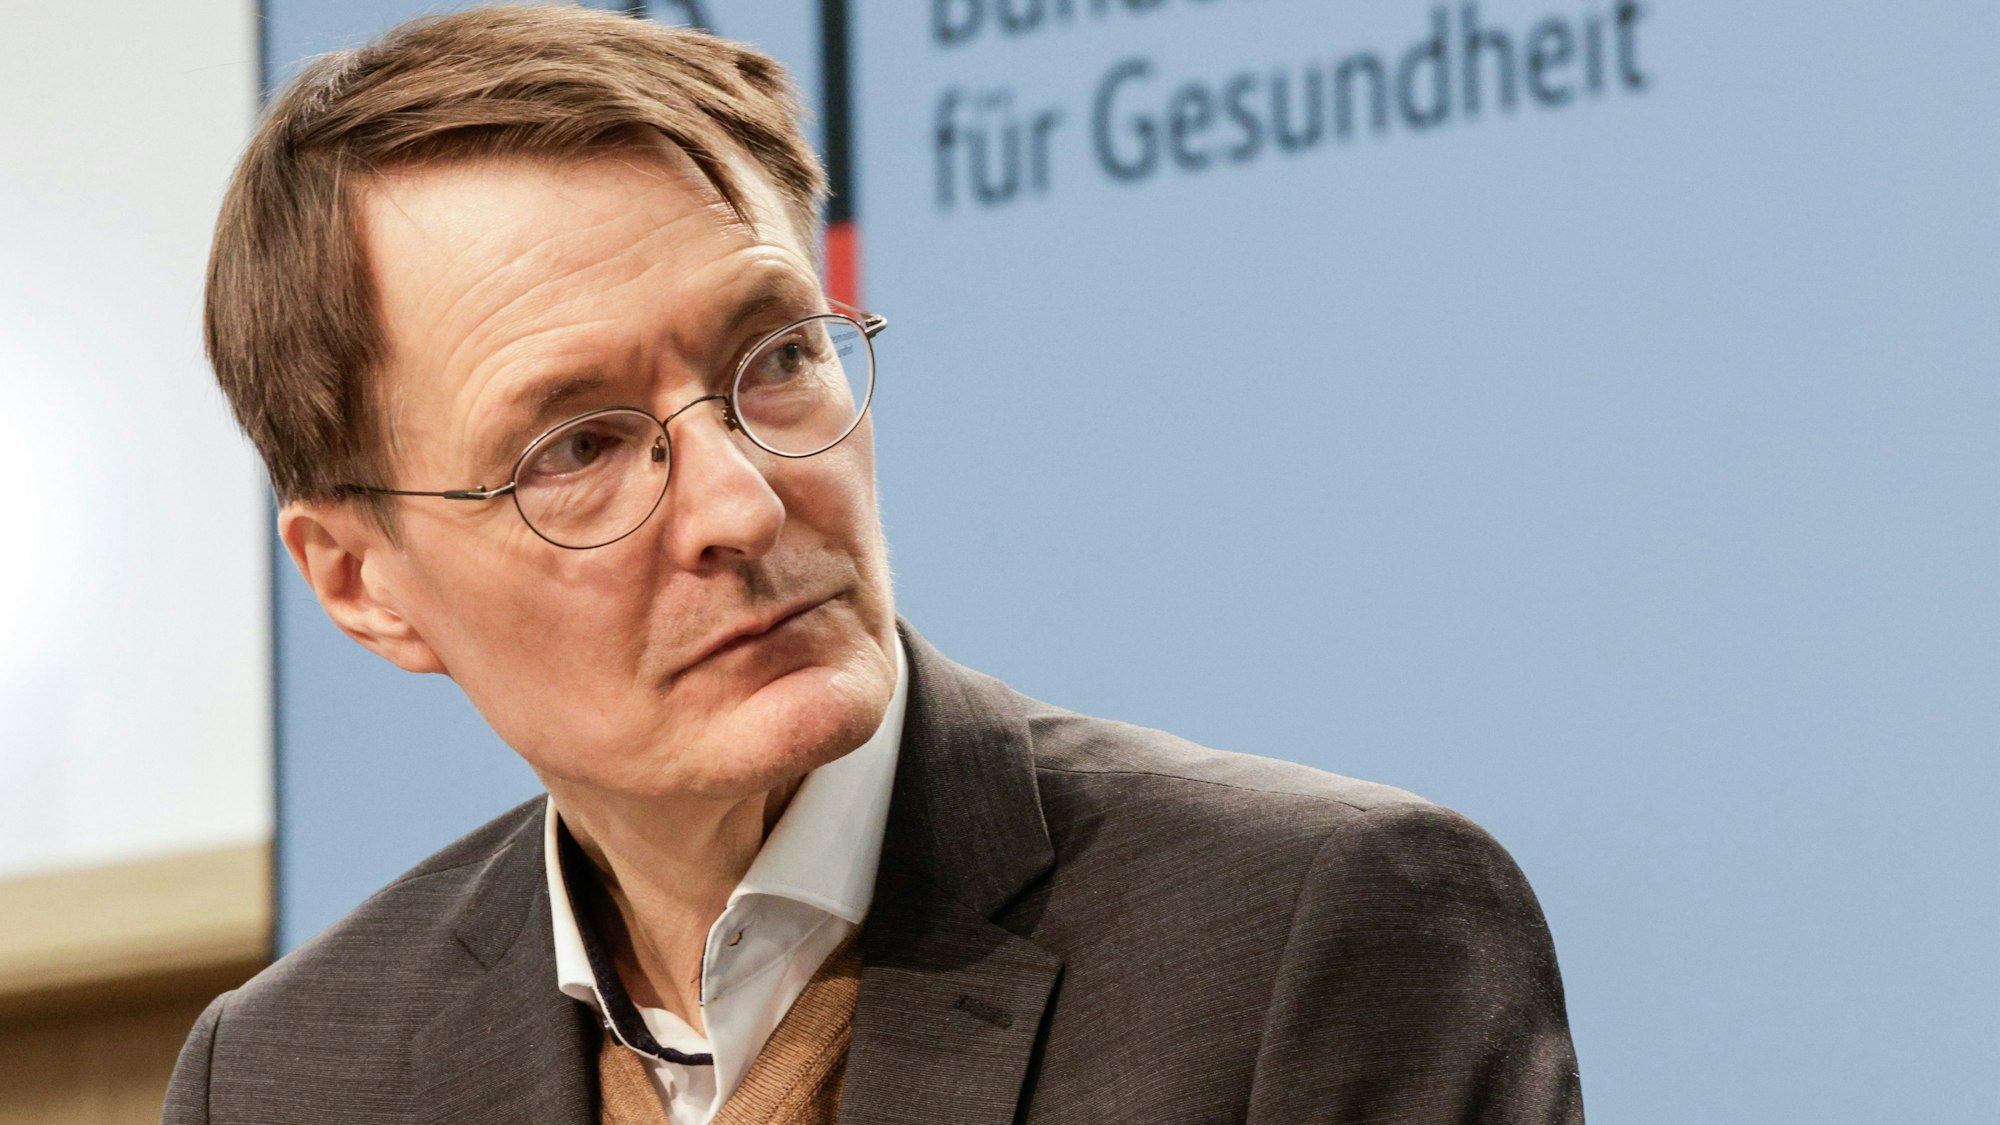 Karl Lauterbach (SPD), Bundesminister für Gesundheit, will Homöopathie künftig nicht mehr als Kassenleistung laufen lassen.